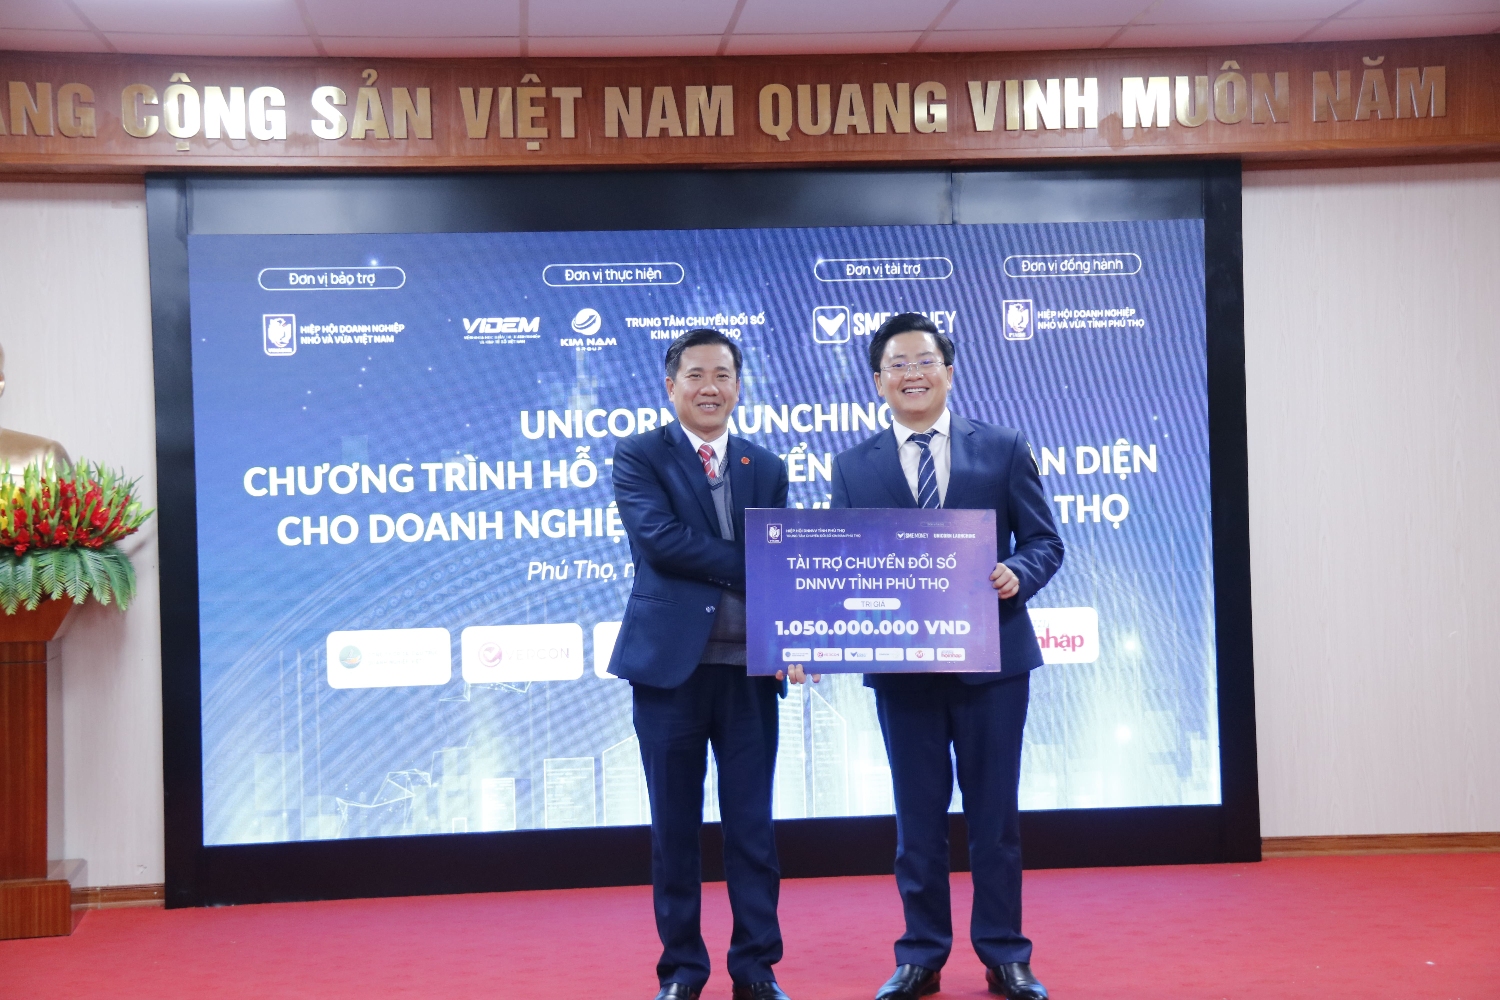 Ông Nguyễn Kim Hùng trao gói tài trợ hơn 1 tỷ đồng cho đại diện Hiệp hội DNNVV tỉnh Phú Thọ